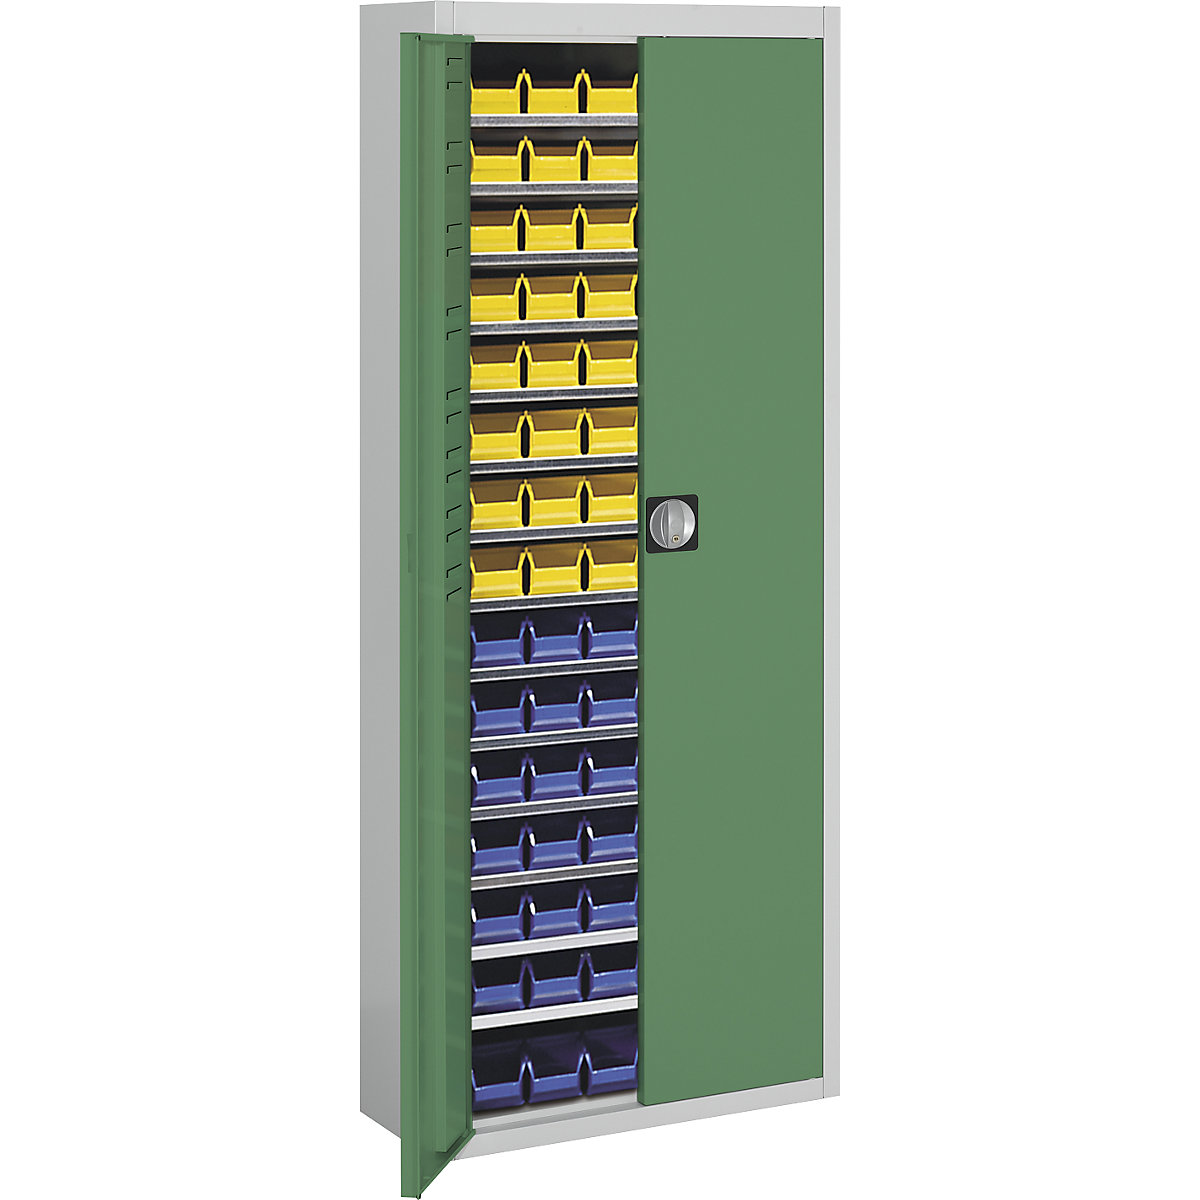 Magazijnkast met magazijnbakken – mauser, h x b x d = 1740 x 680 x 280 mm, tweekleurig, kastframe grijs, deuren groen, 90 bakken-3